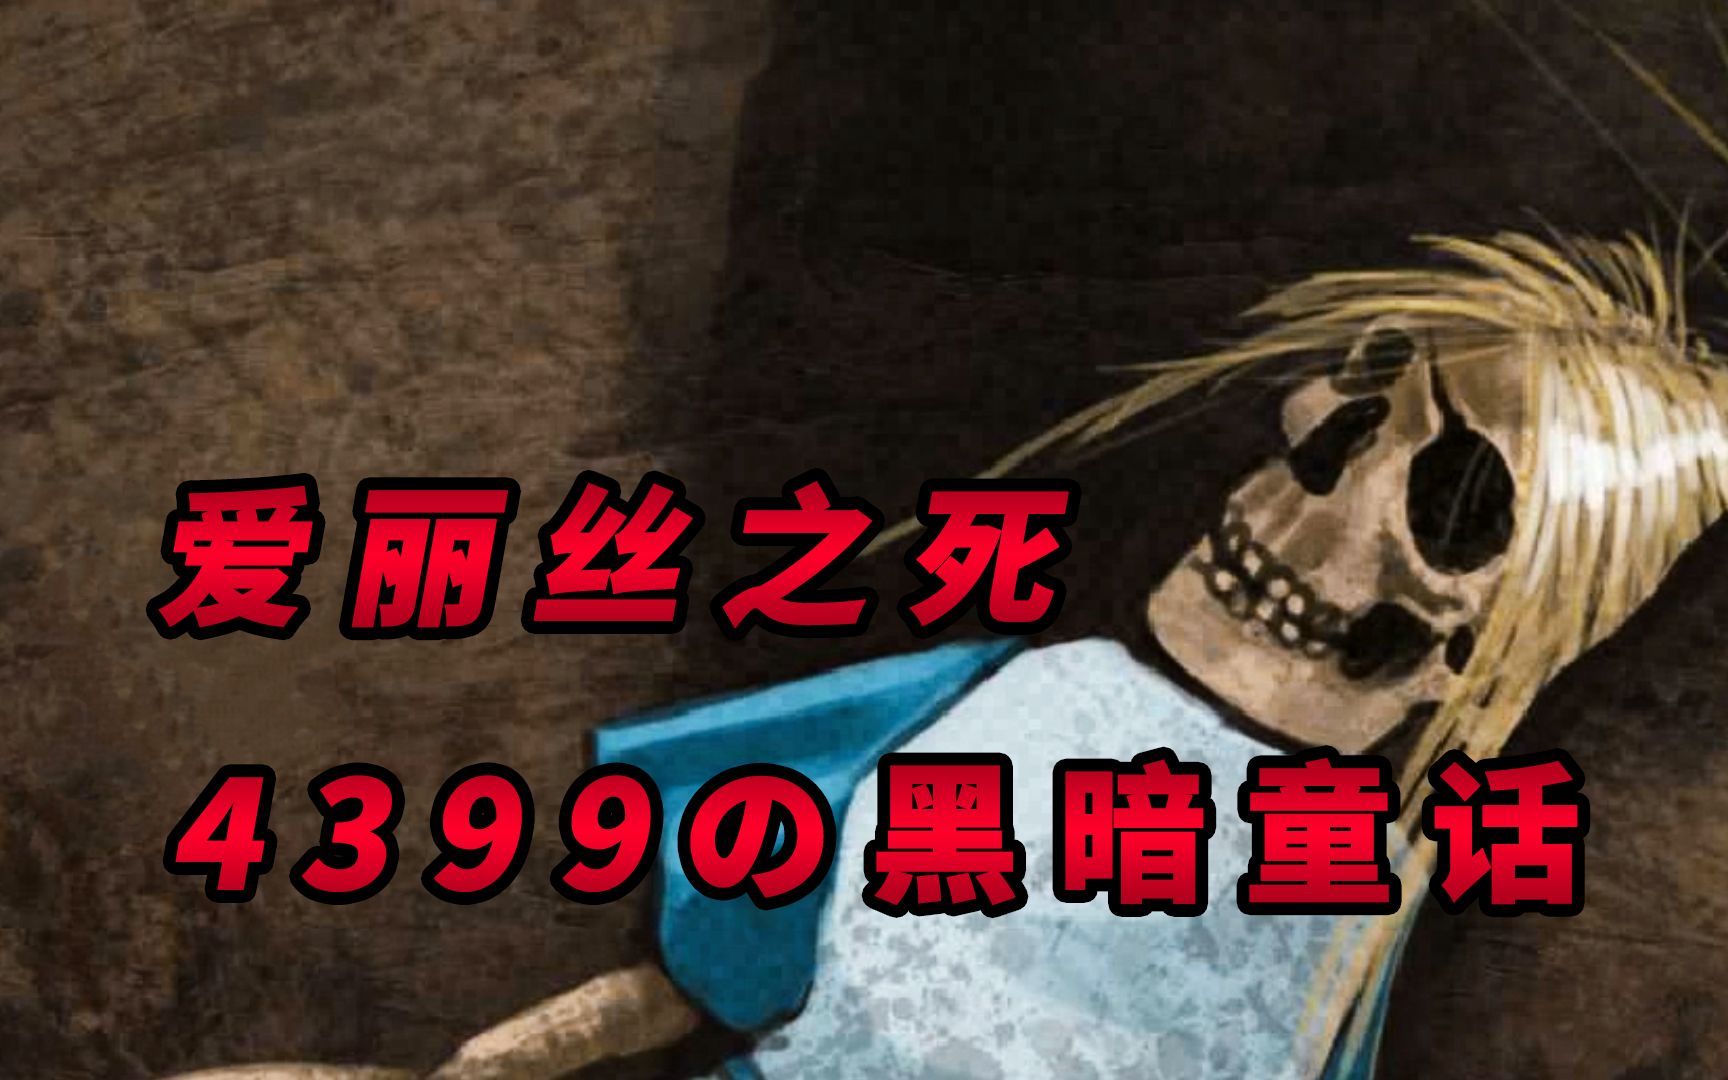 爱丽丝梦游仙境的主角意外死亡！这部4399的小游戏结局到底是什么？！